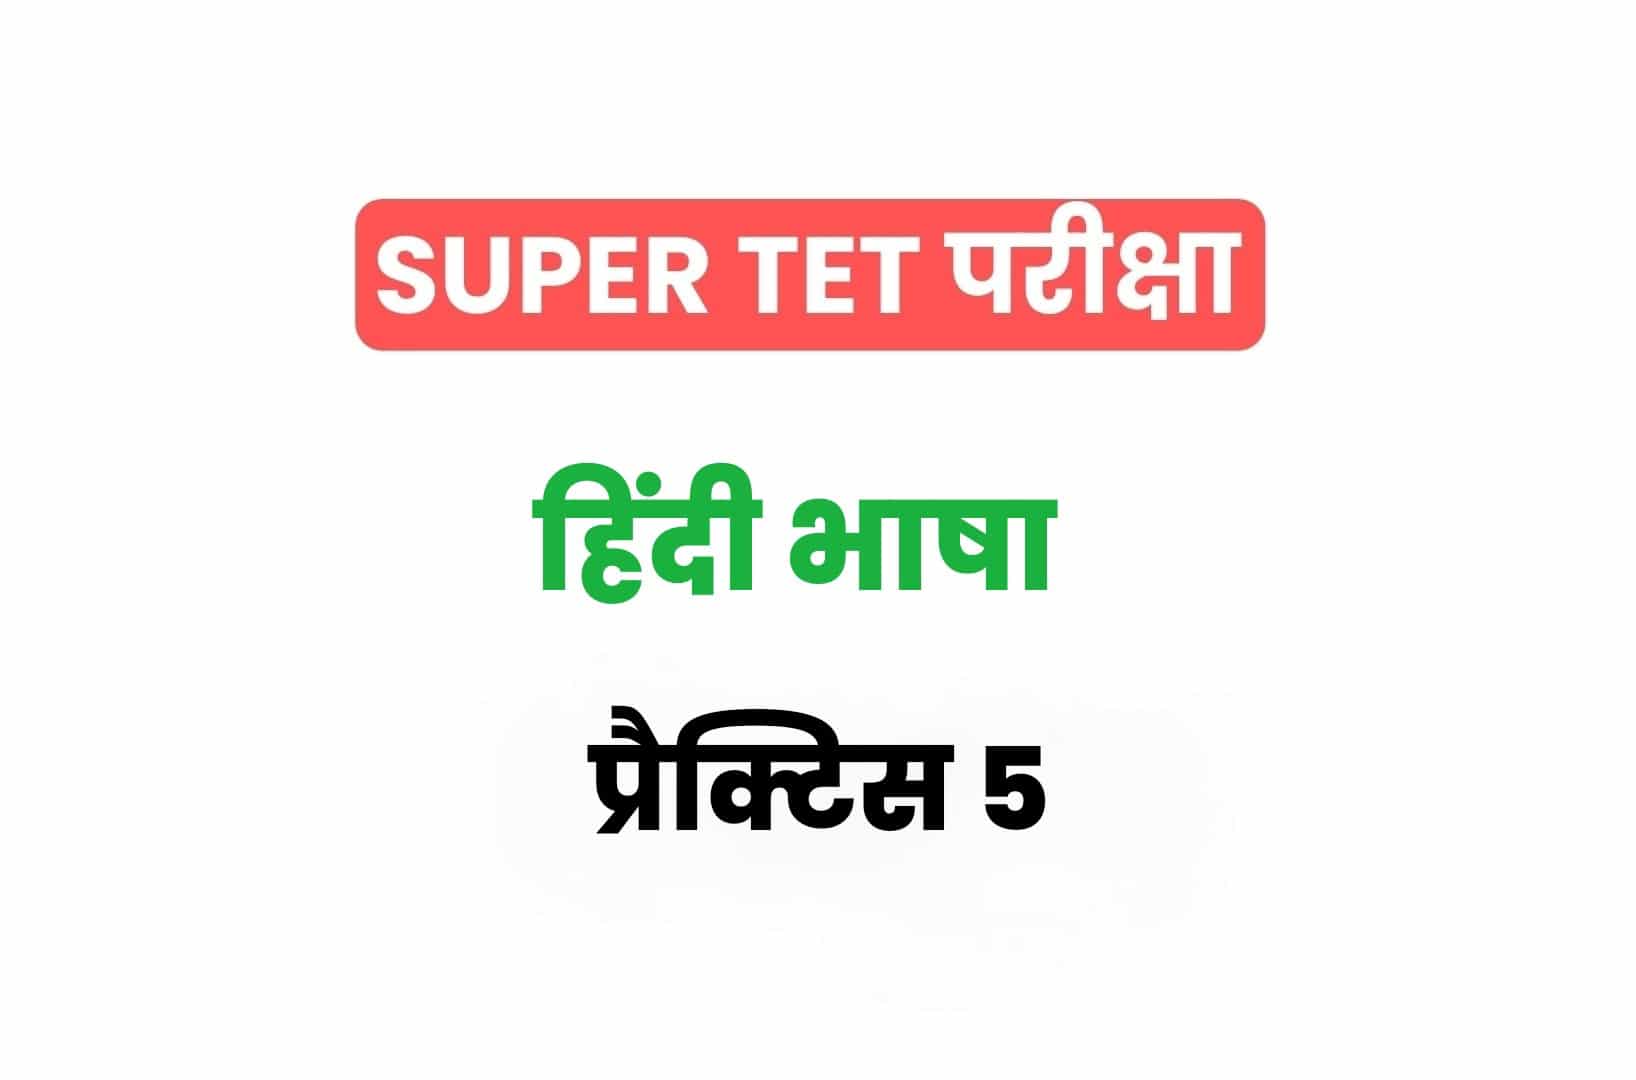 SUPER TET 2022 हिंदी प्रैक्टिस सेट 5: हिंदी के 15 ऐसे महत्वपूर्ण प्रश्नों का संग्रह जो आगामी सुपर टेट परीक्षा में पूछे जा सकते हैं, अवश्य देखें